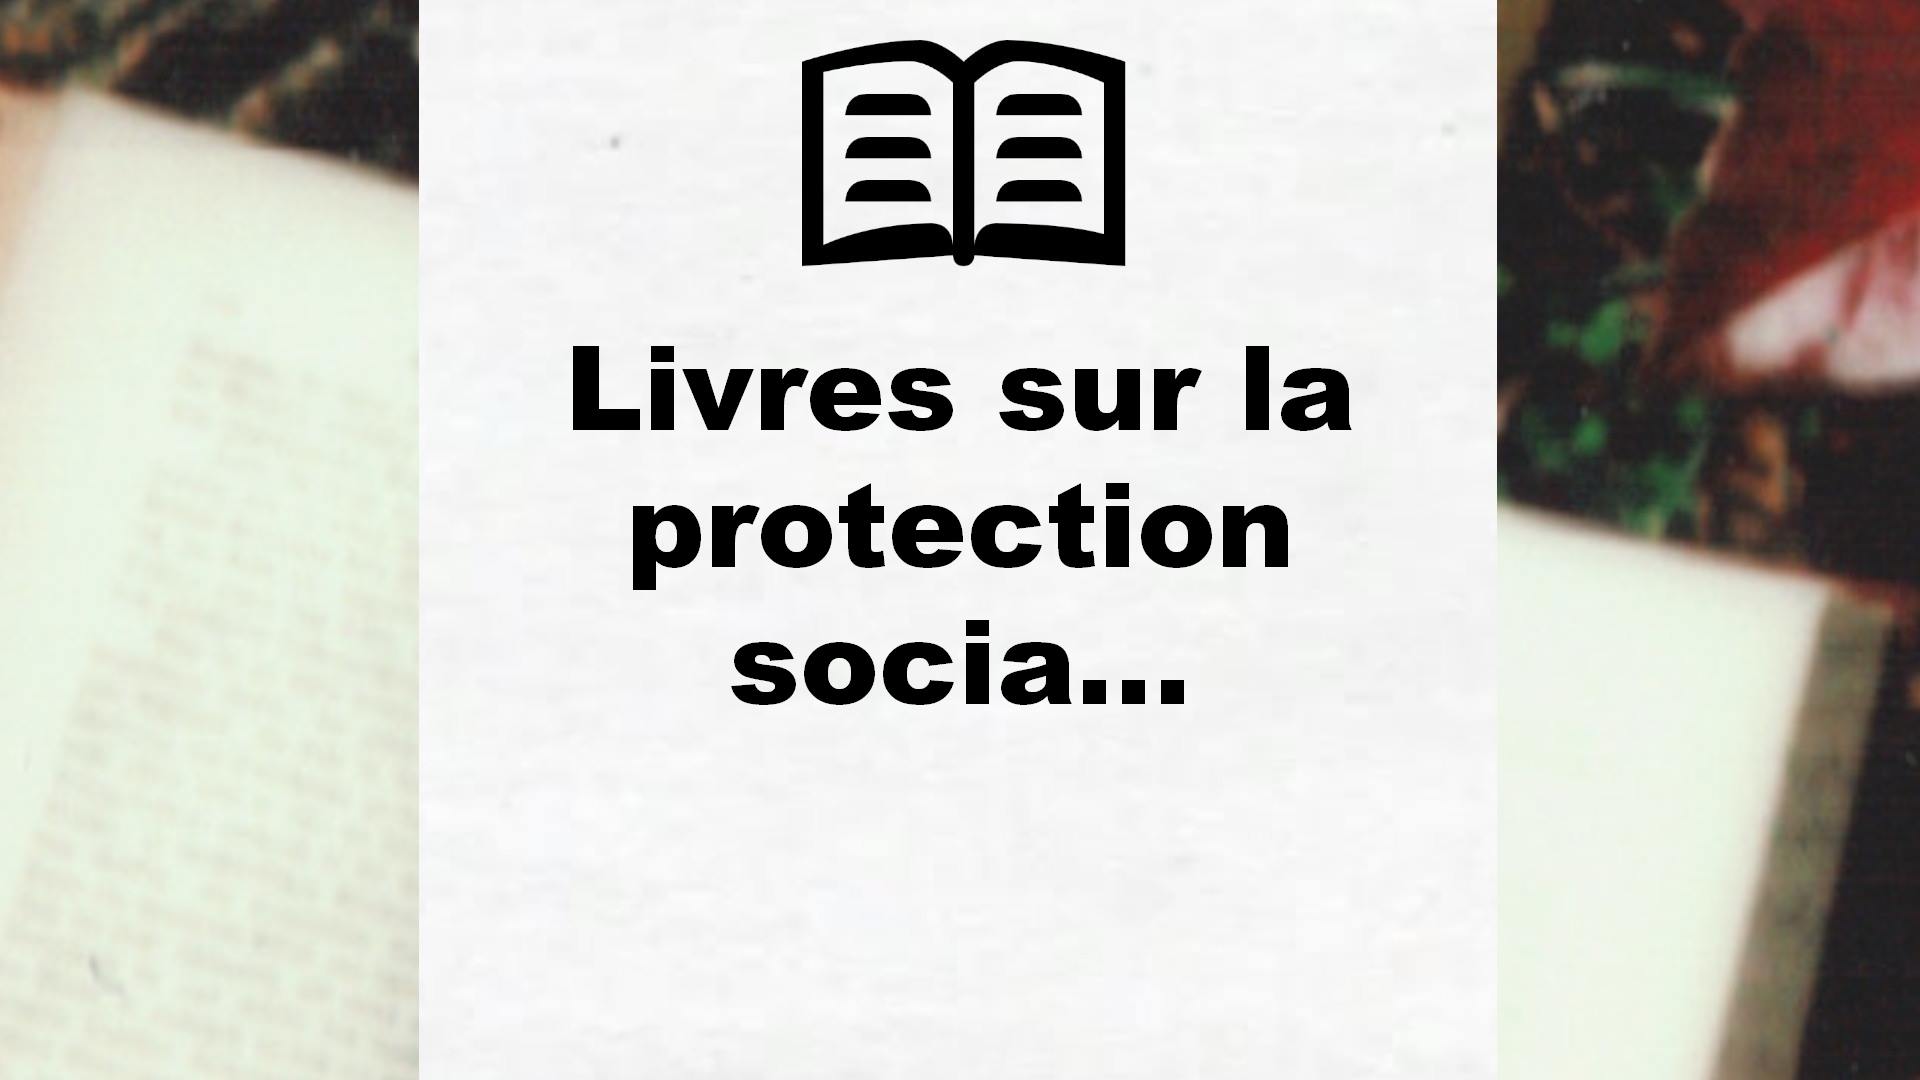 Livres sur la protection sociale